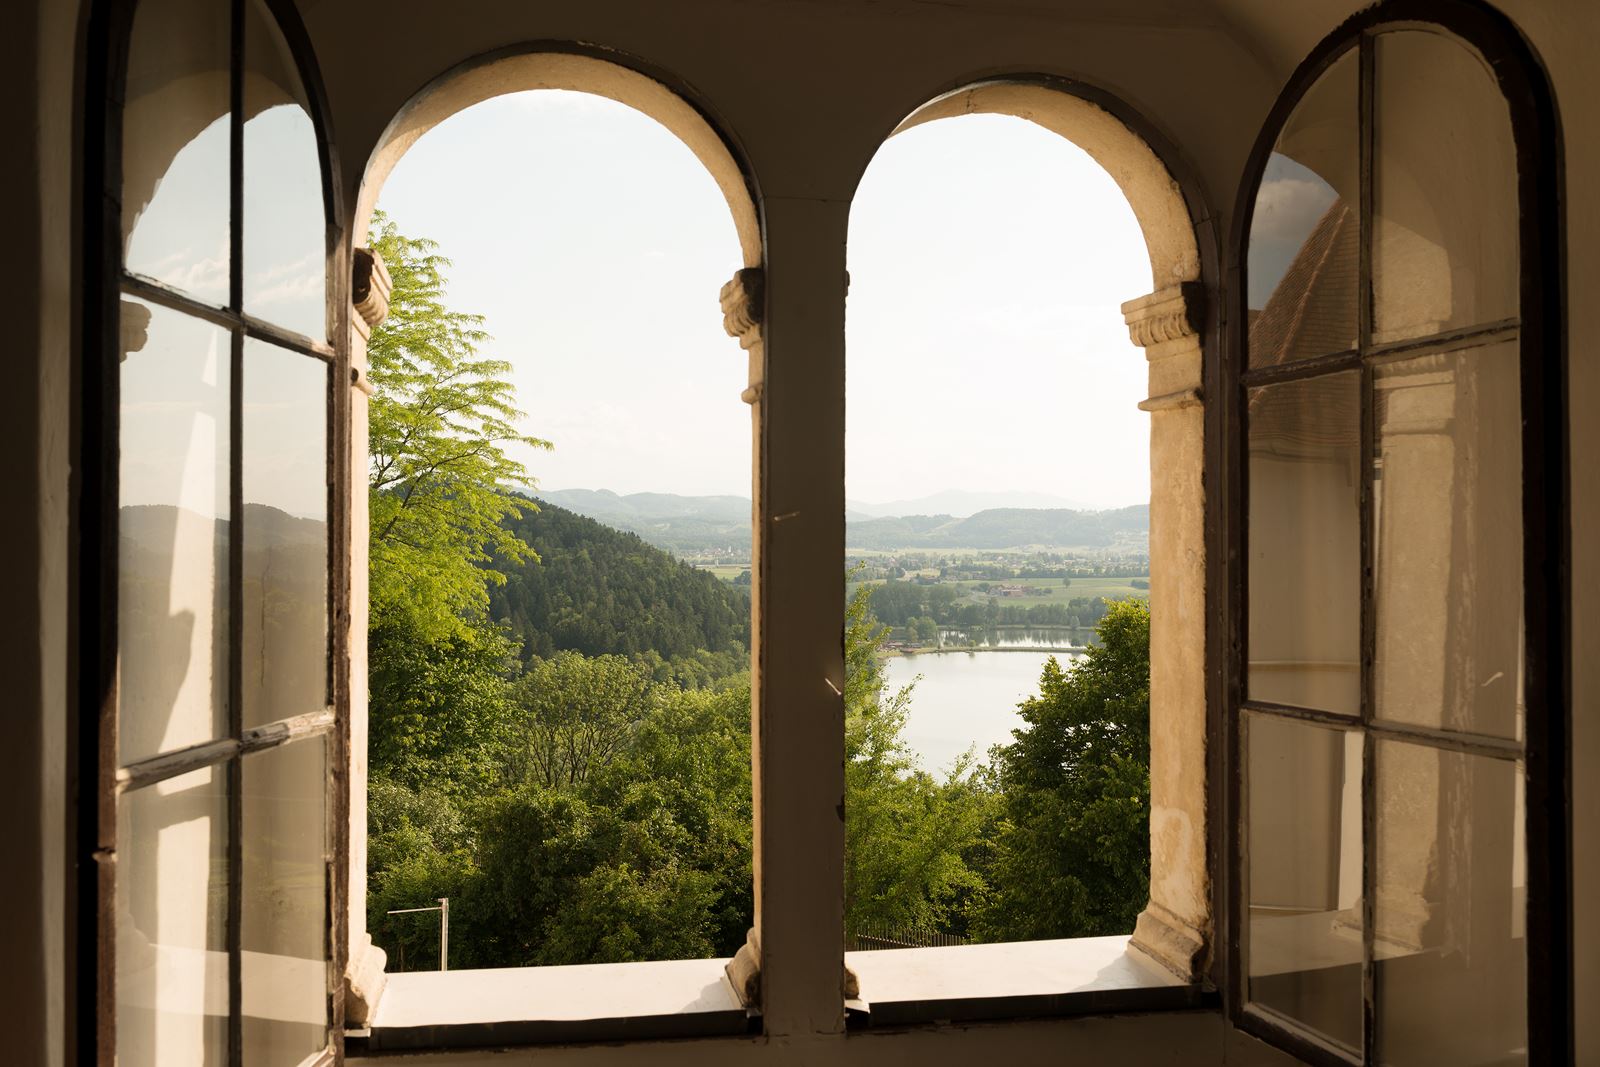 Der Blick führt aus einem Fenster des Oberschlosses auf den Sulmsee und die grüne Landschaft